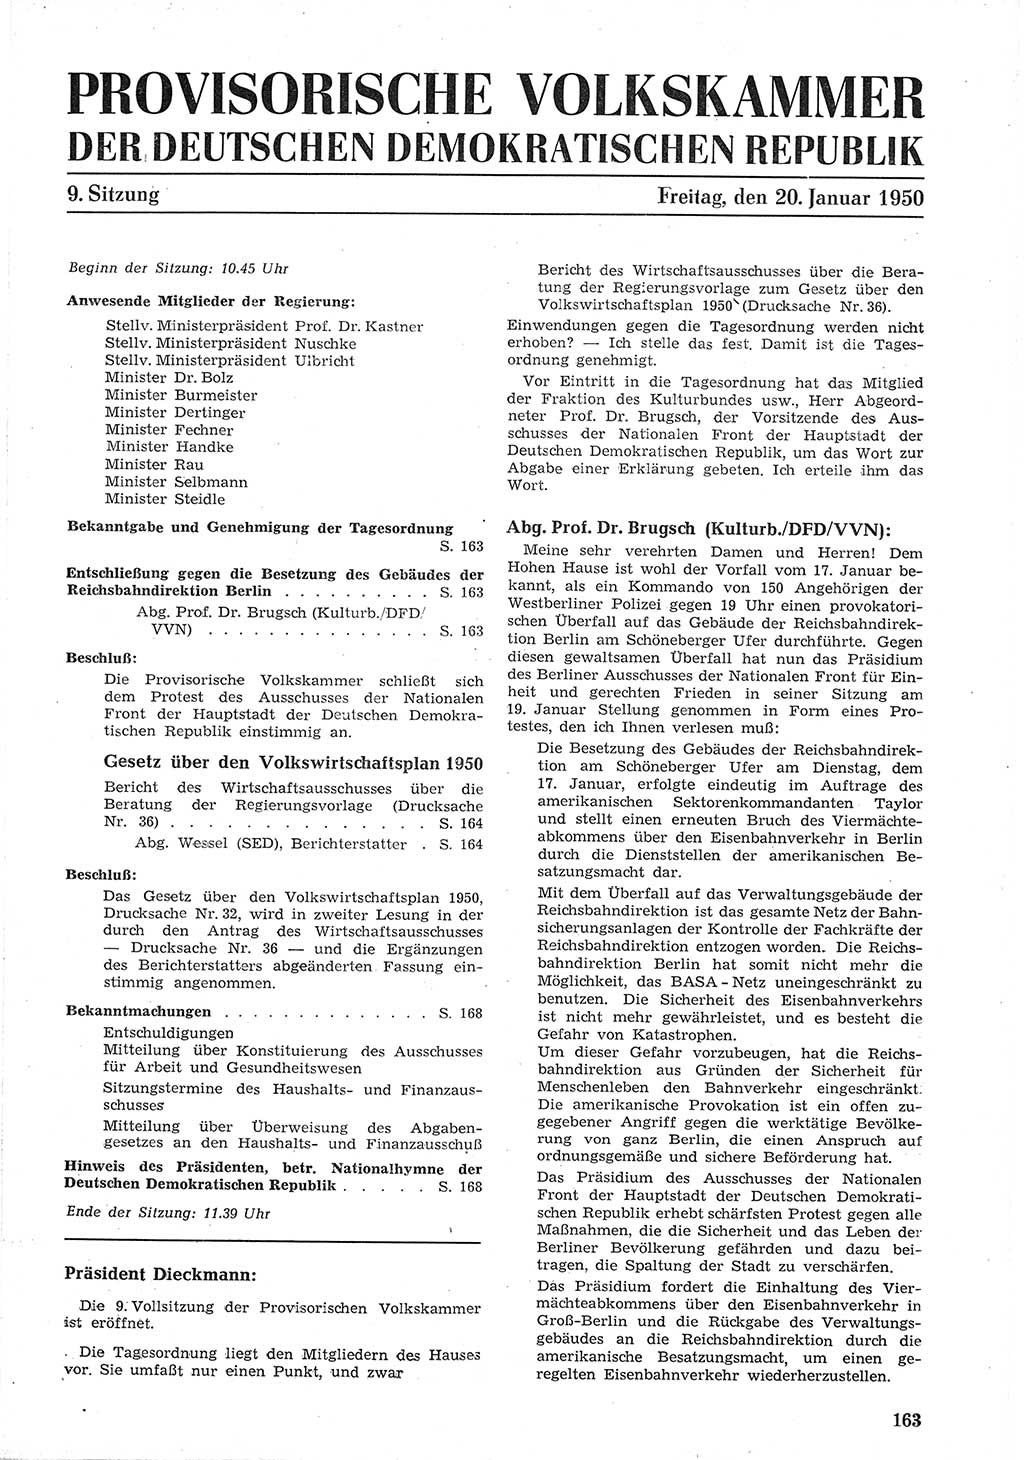 Provisorische Volkskammer (VK) der Deutschen Demokratischen Republik (DDR) 1949-1950, Dokument 175 (Prov. VK DDR 1949-1950, Dok. 175)